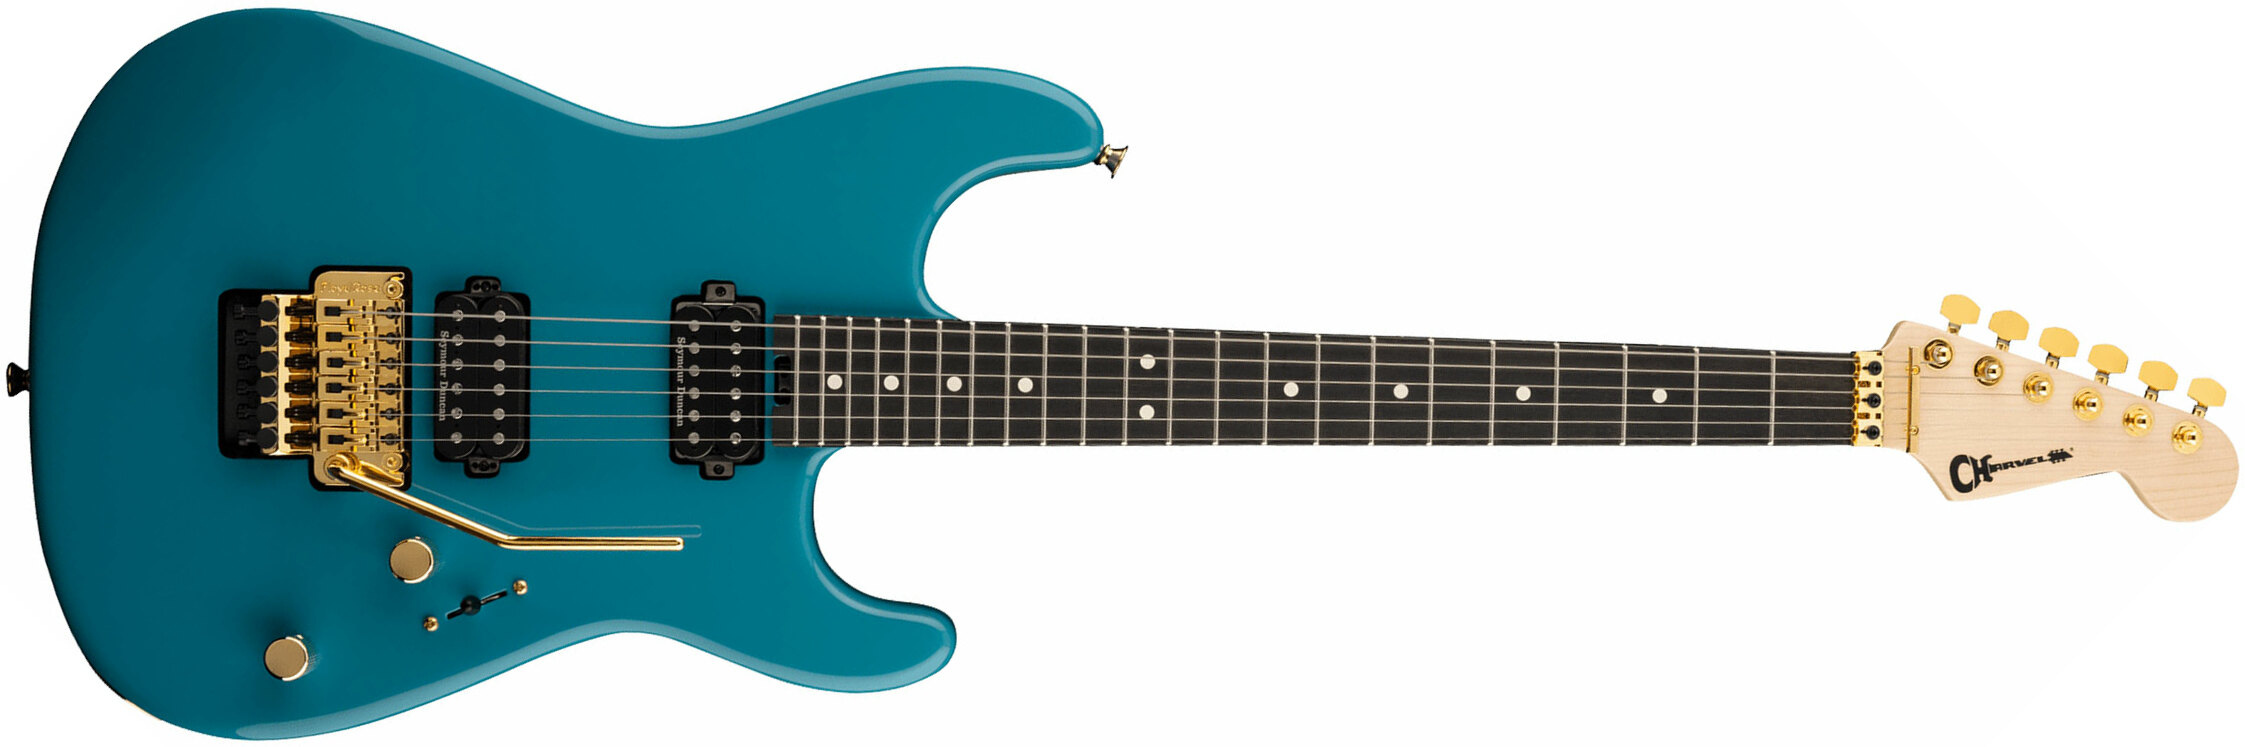 Charvel San Dimas Style 1 Hh Fr E Pro-mod Seymour Duncan Eb - Miami Blue - Elektrische gitaar in Str-vorm - Main picture